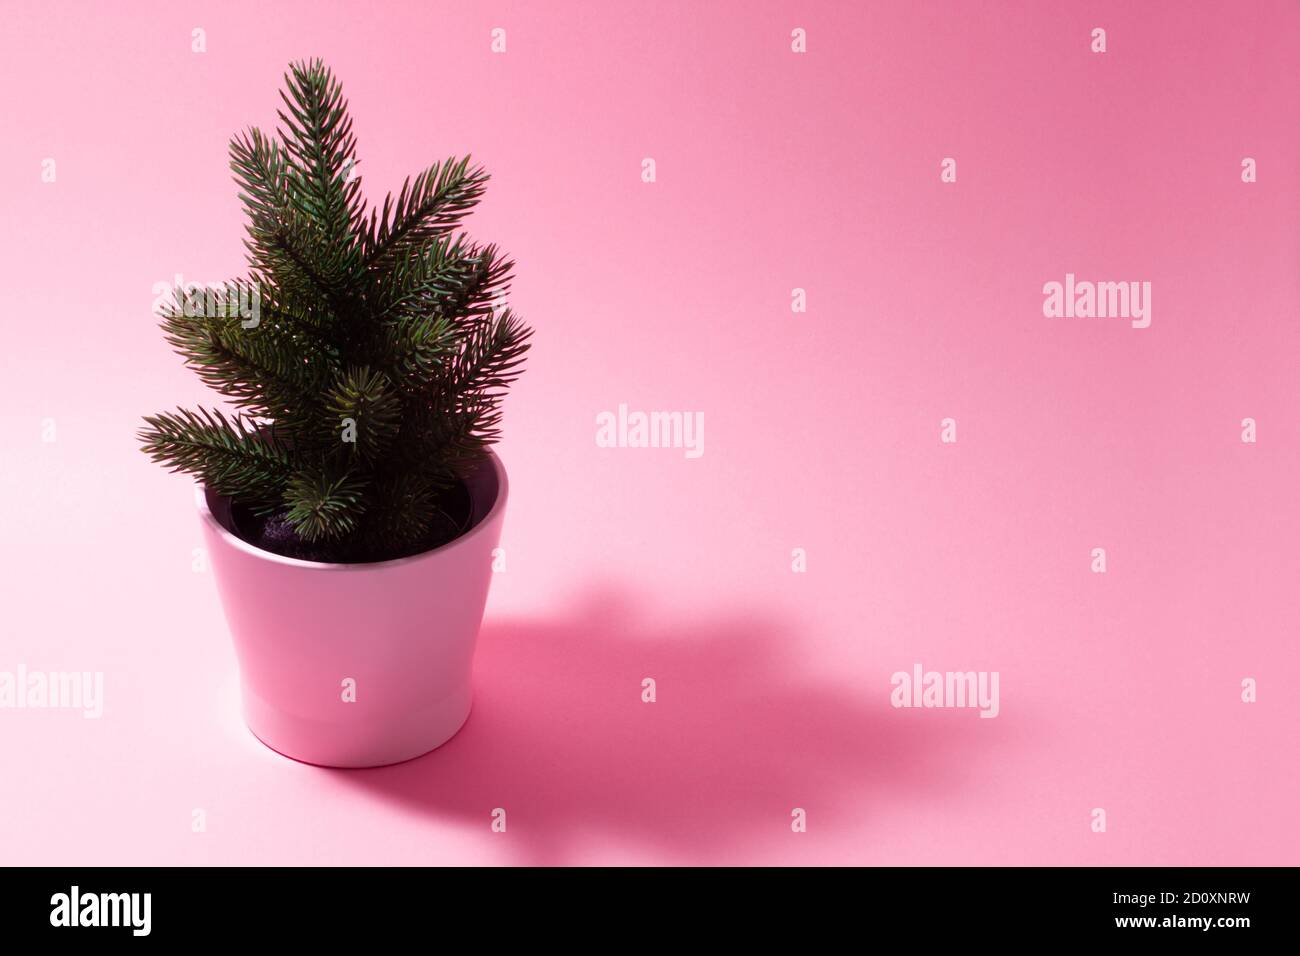 Composition rose pâle sur un nouveau thème de l'année. Un petit sapin de Noël décoratif sur fond rose. Banque D'Images